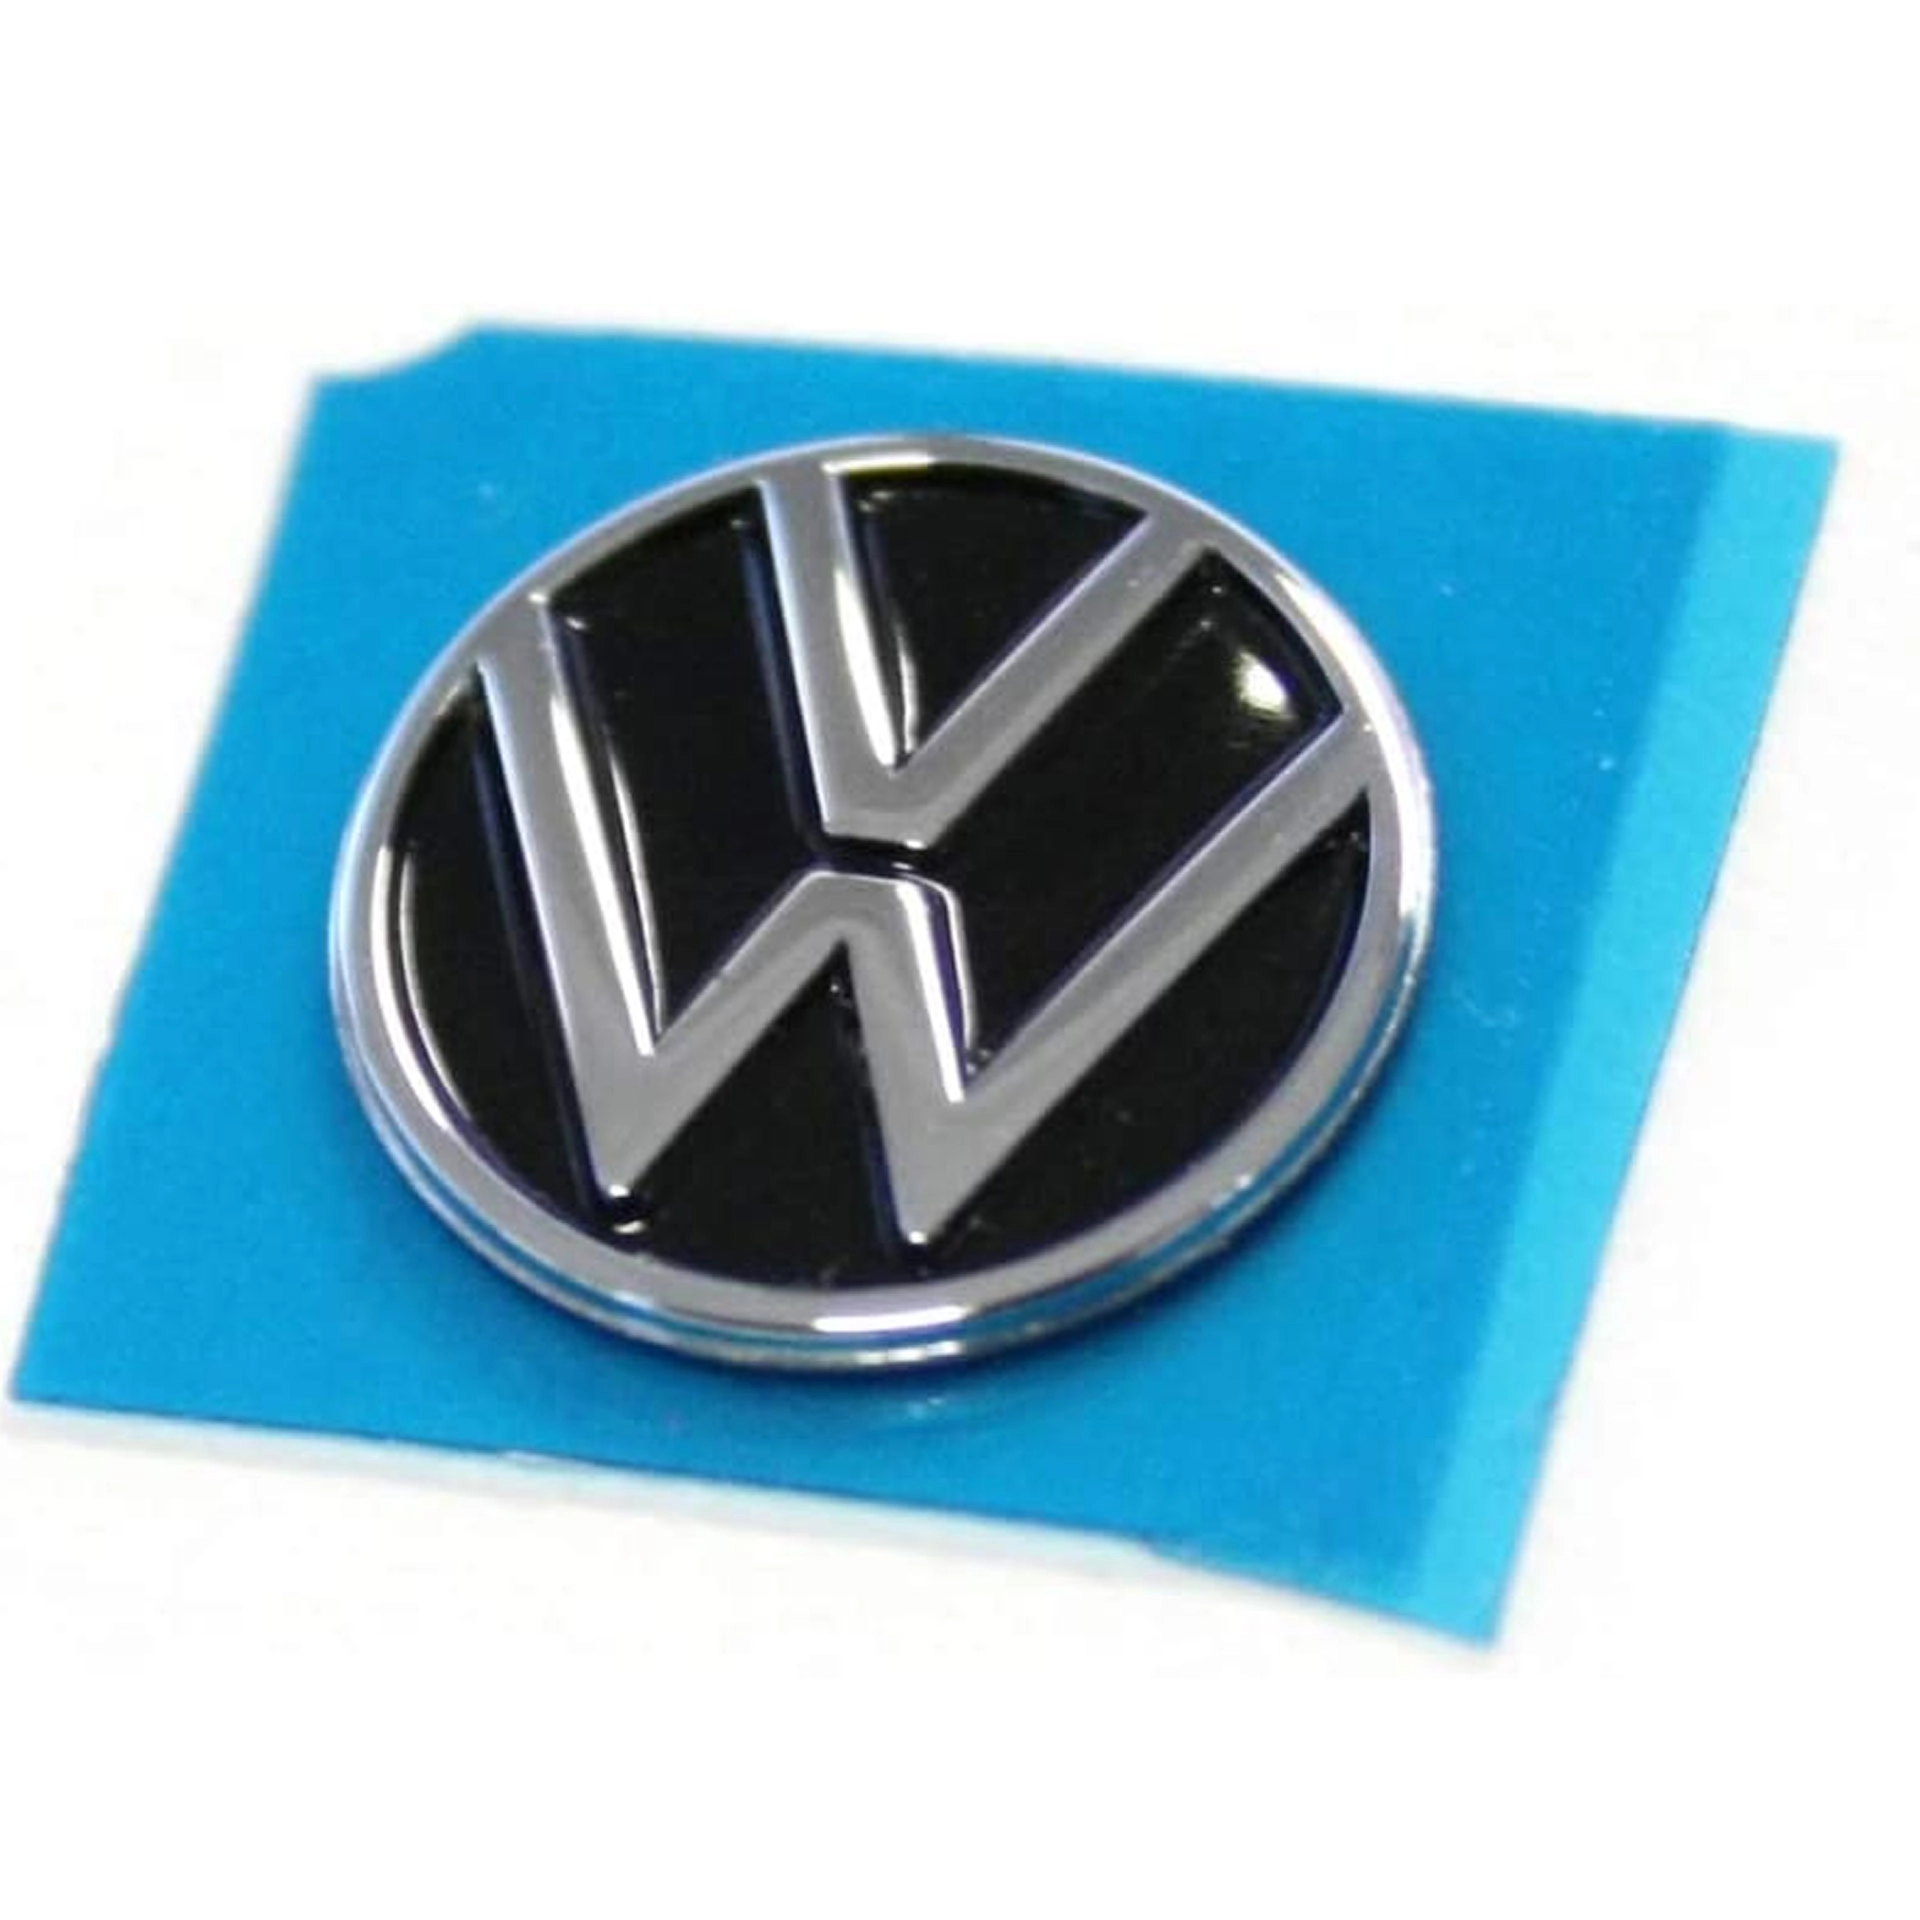 3g08378912zz volkswagen emblem logo autoschluessel rosier onlineshop